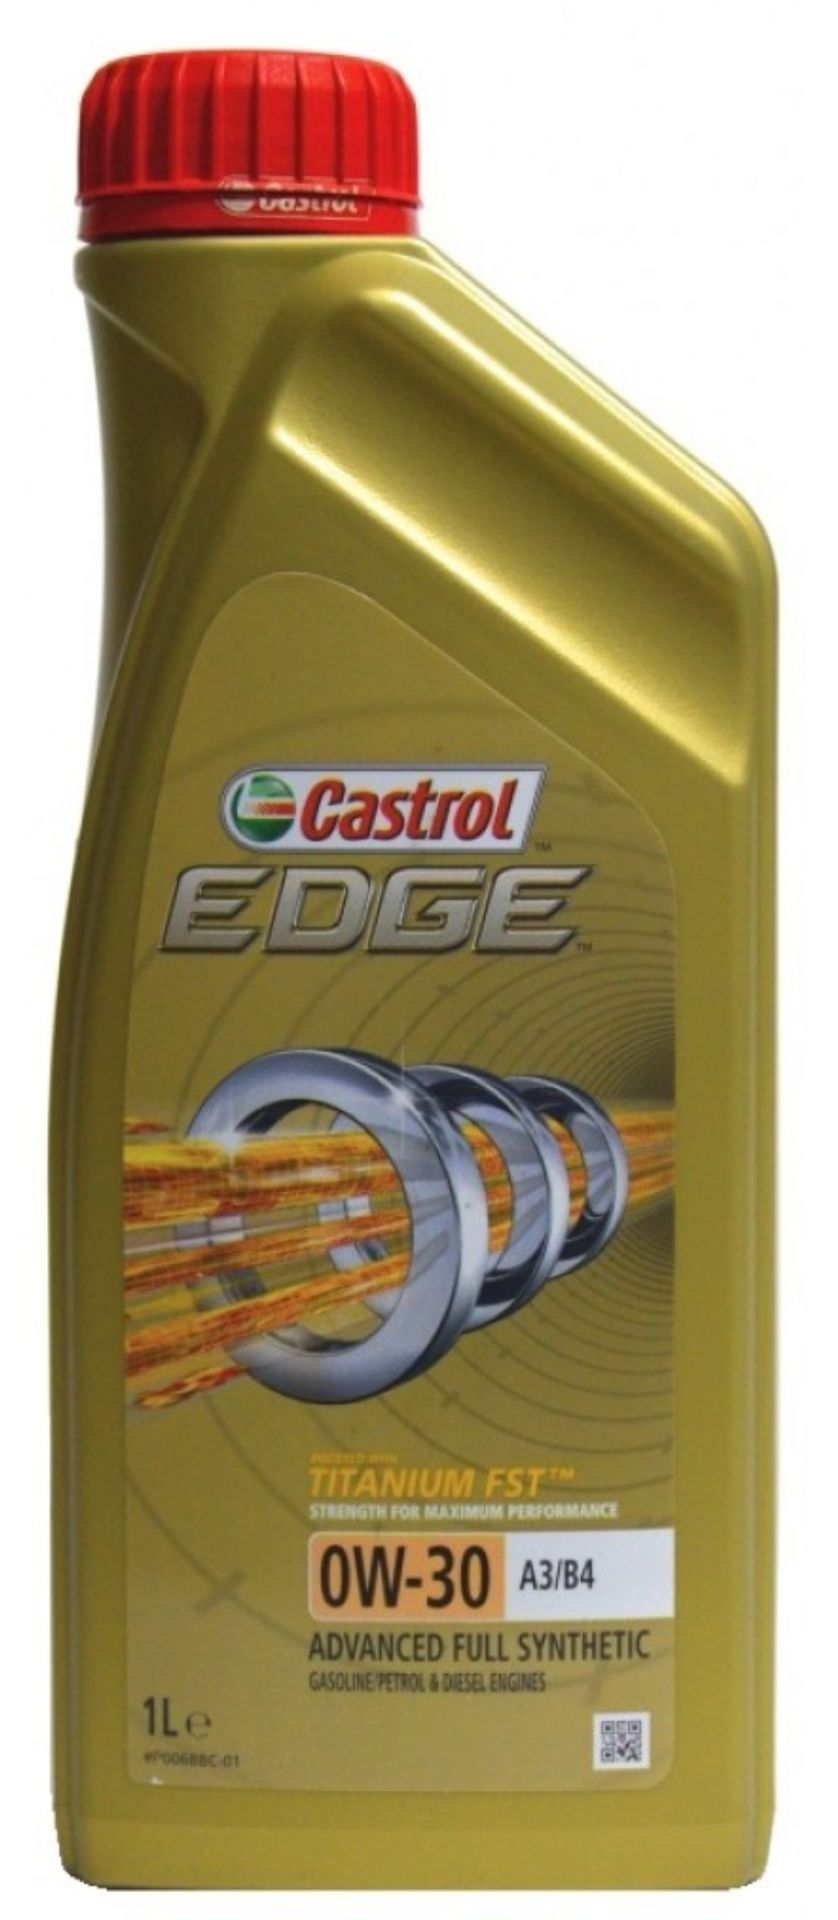 Масло Castrol EDGE 0W-30 (1л)(синтетическое)/A3/B4 Titanium FST /4676800060/(услуга по замене масла) на  